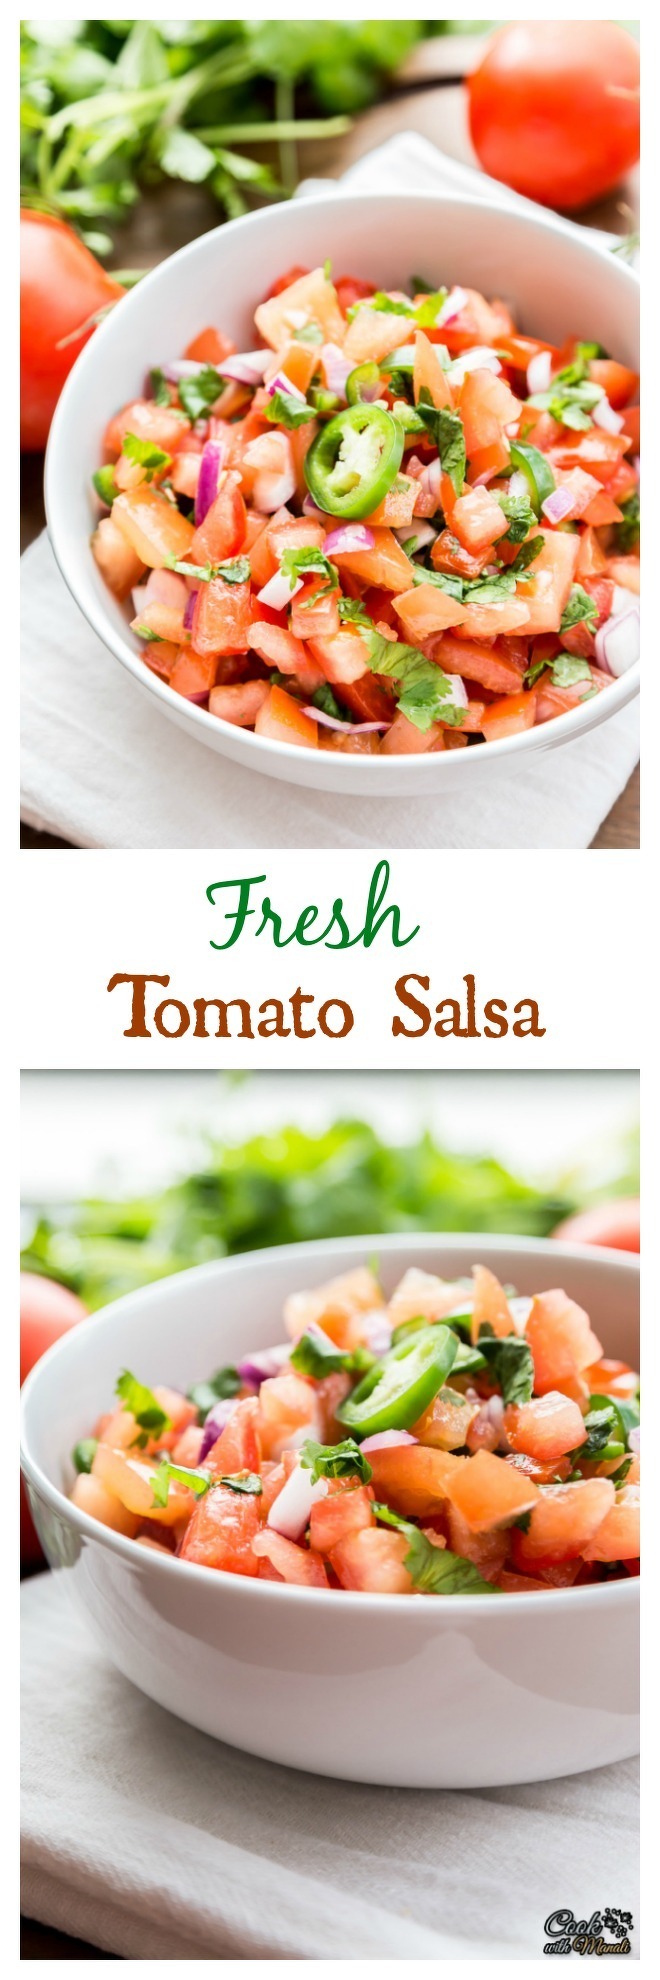 Fresh-Tomato-Salsa-nocwm